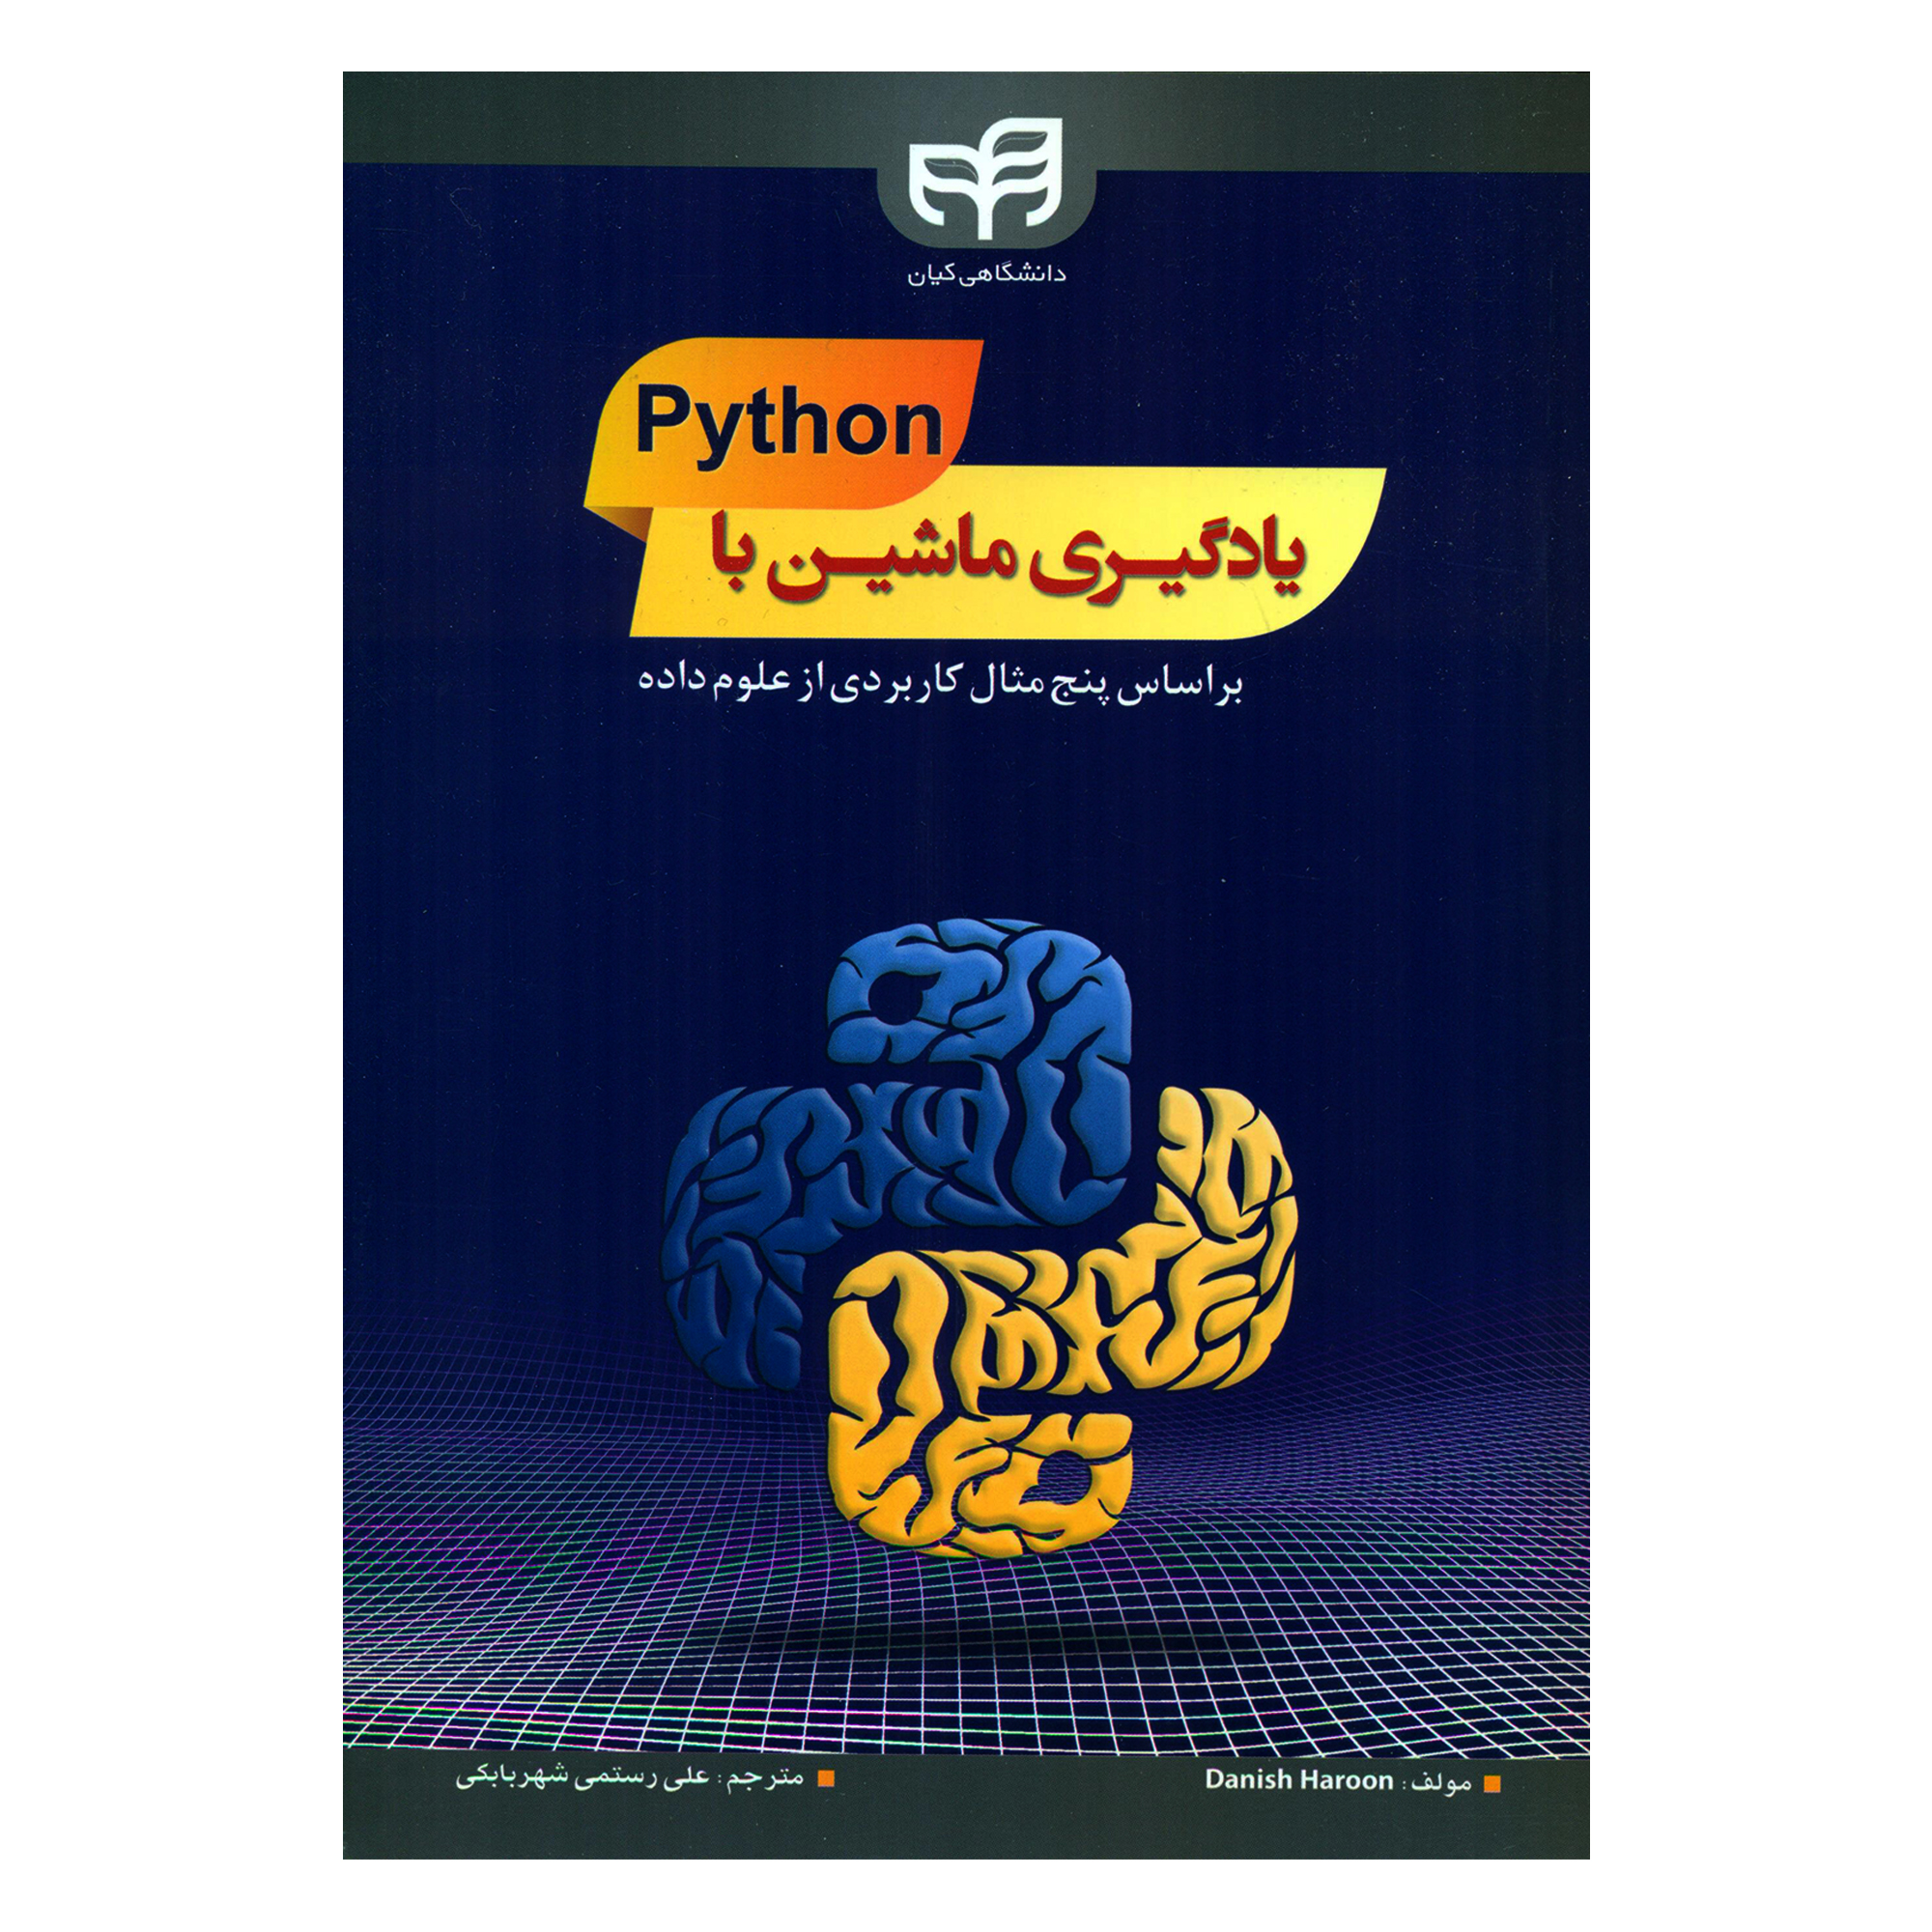 کتاب یادگیری ماشین با Python بر اساس پنج مثال کاربردی از علوم داده اثر دانیش هارون انتشارات کیان رایانه